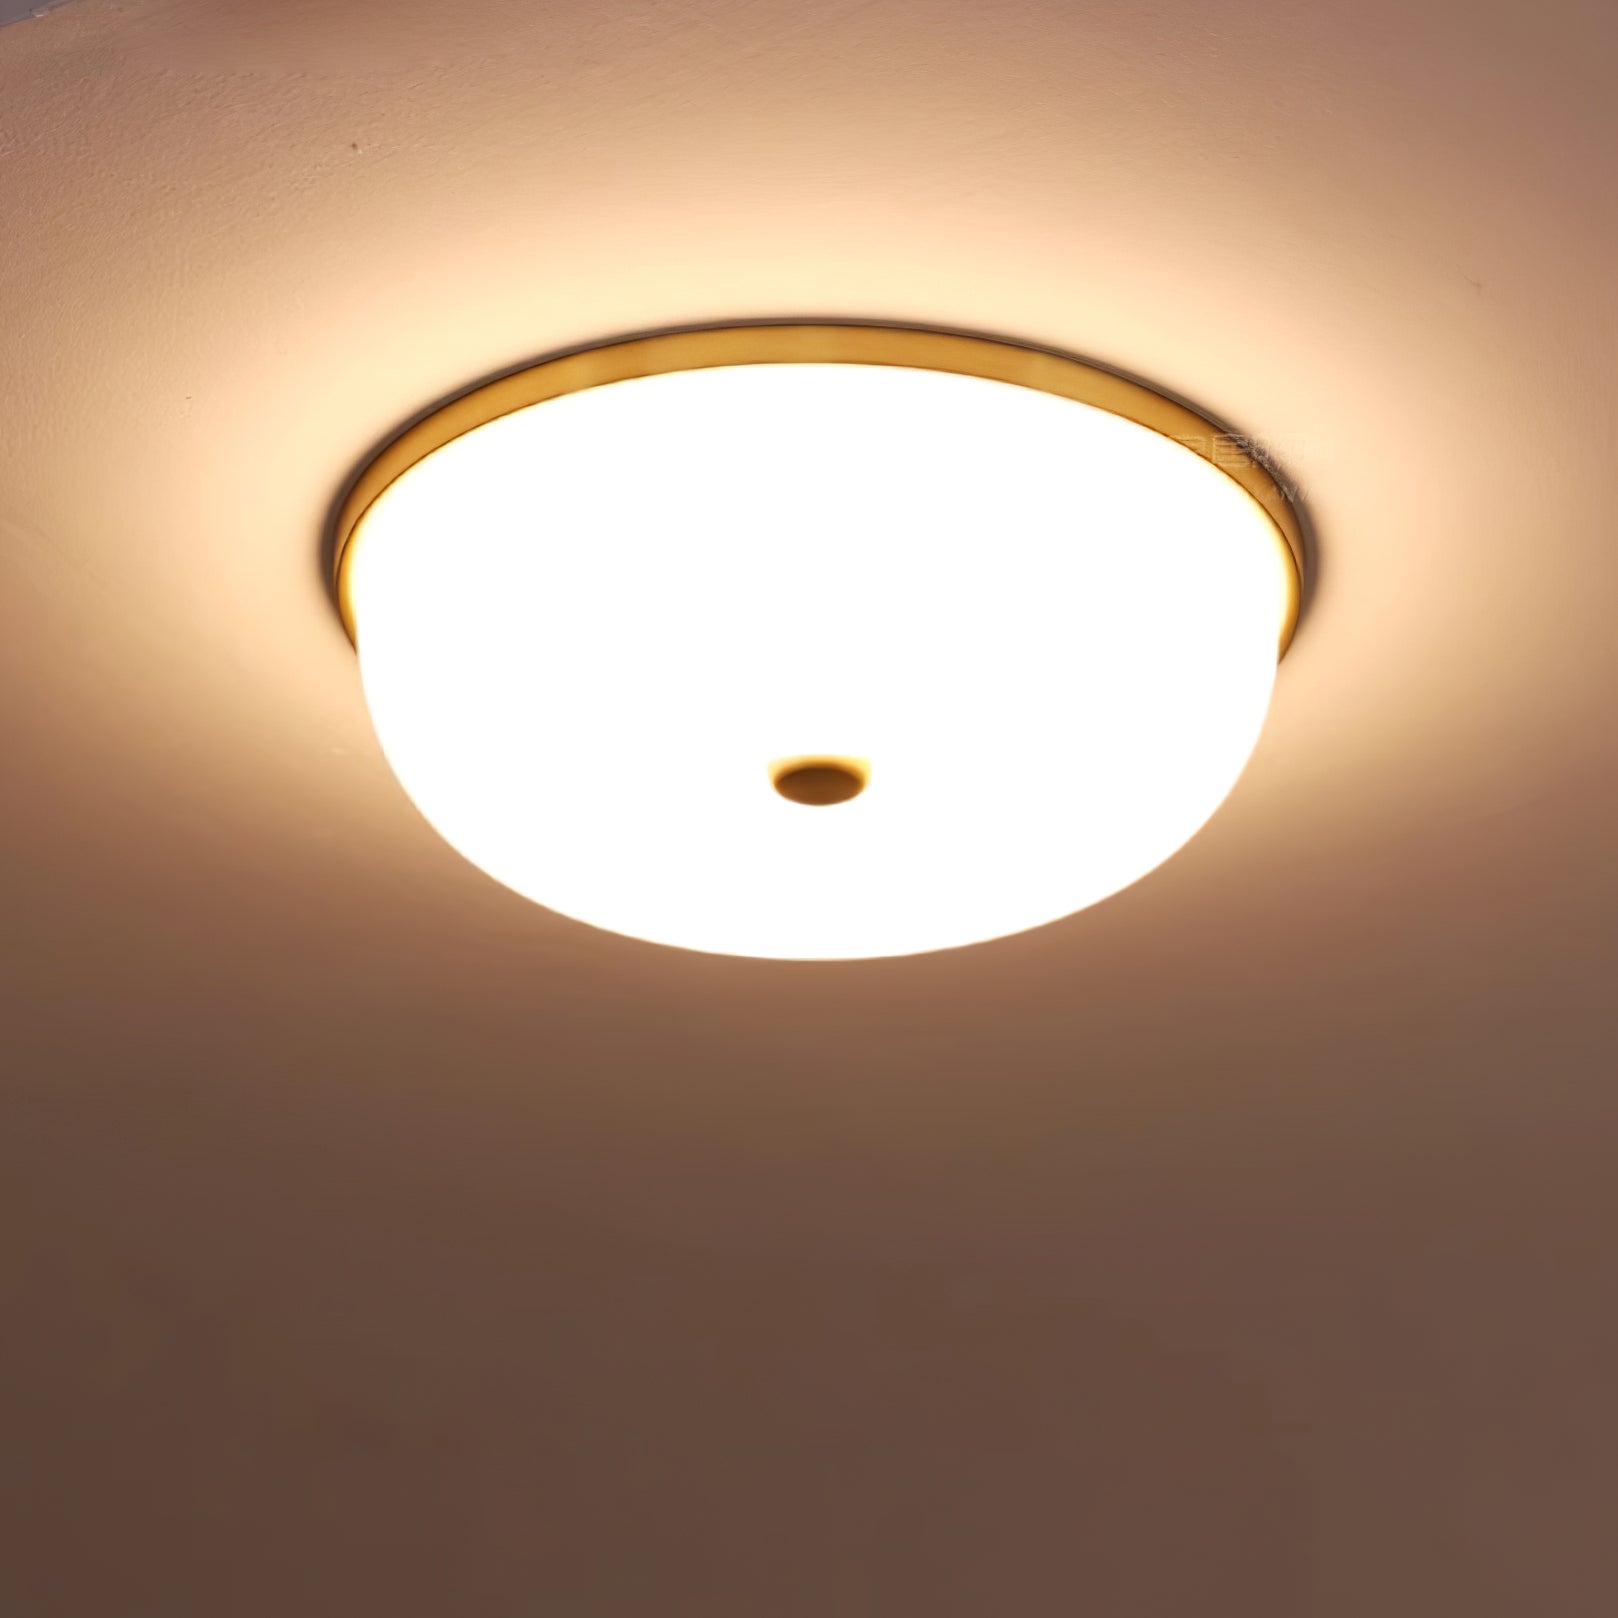 Perkins Ceiling Lamp